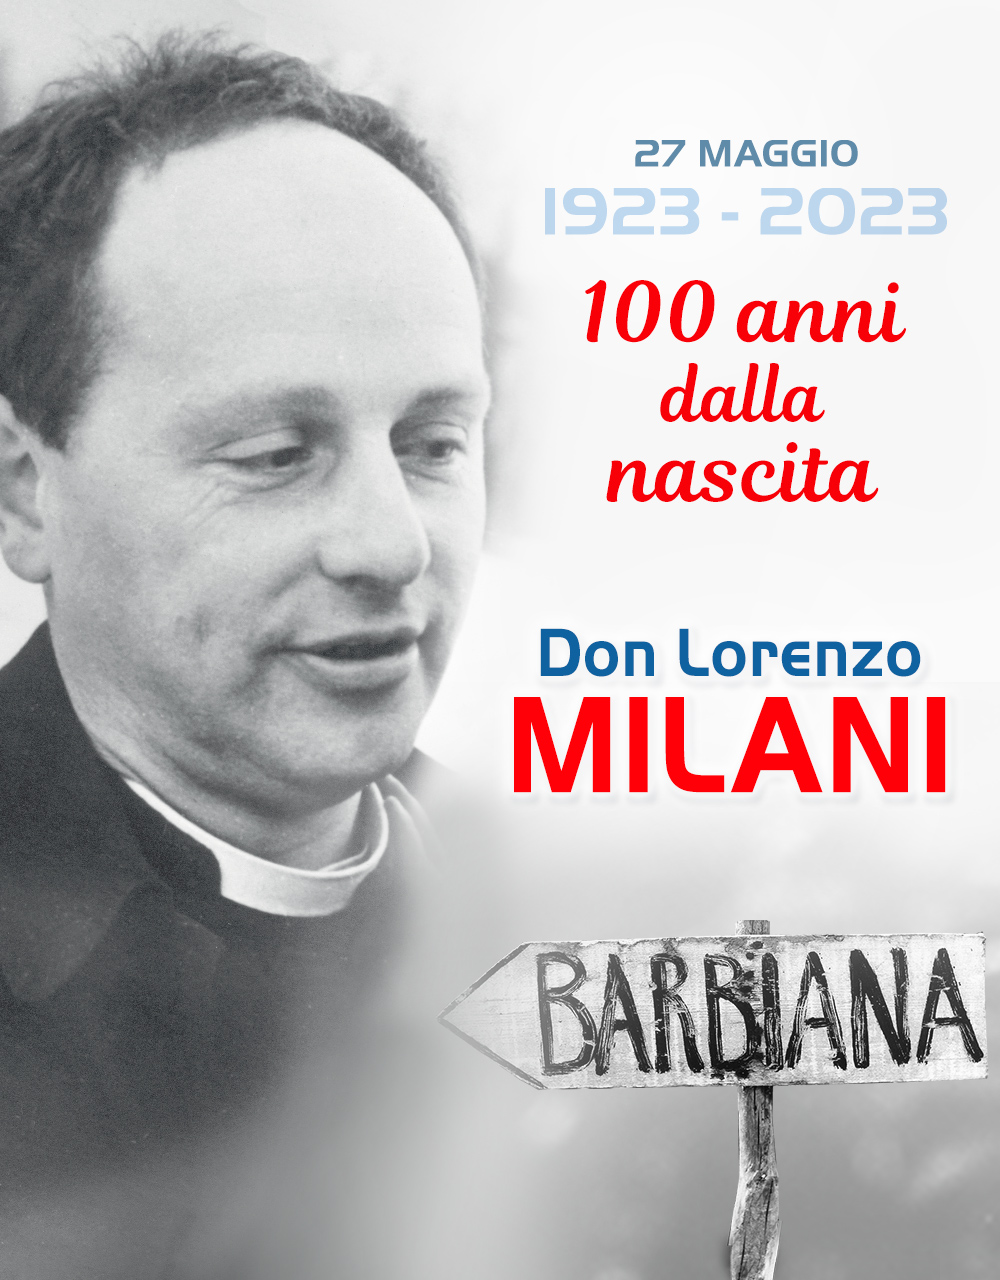 Paoline - 100 anni don Milani